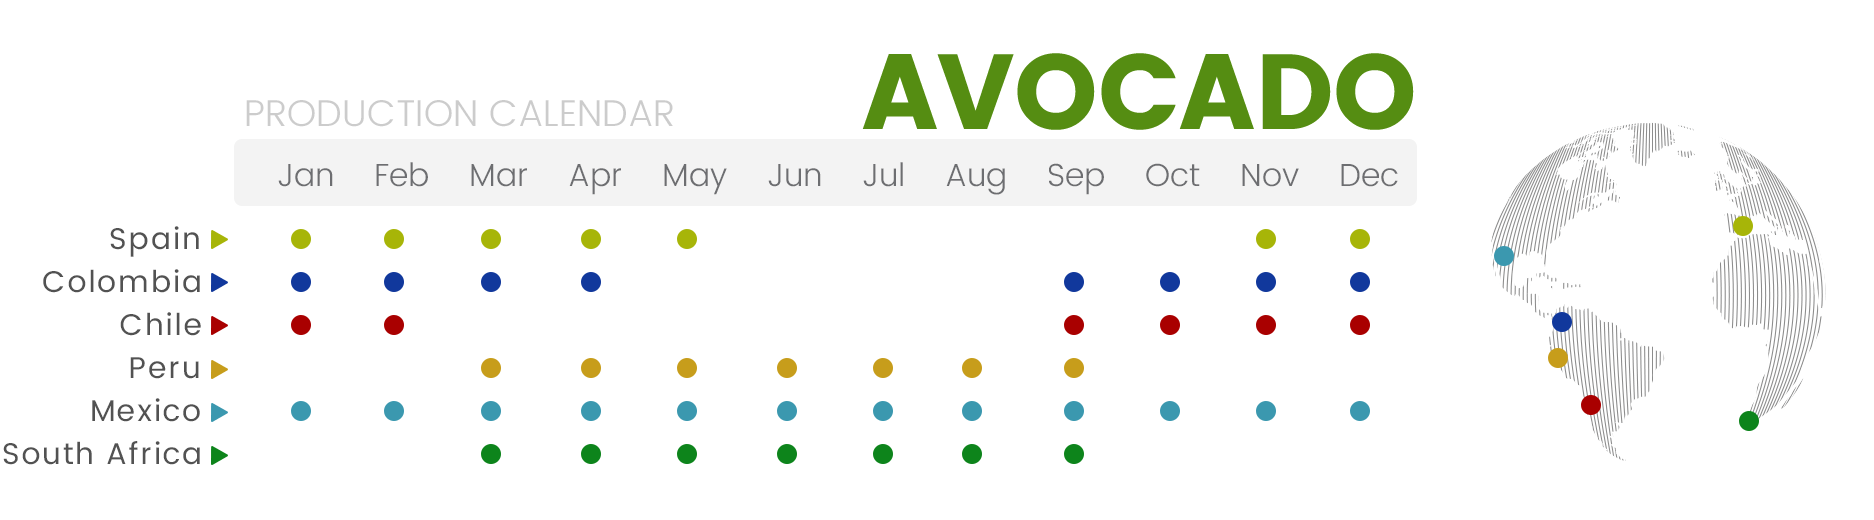 Production calendar | NatureTasty Avocado